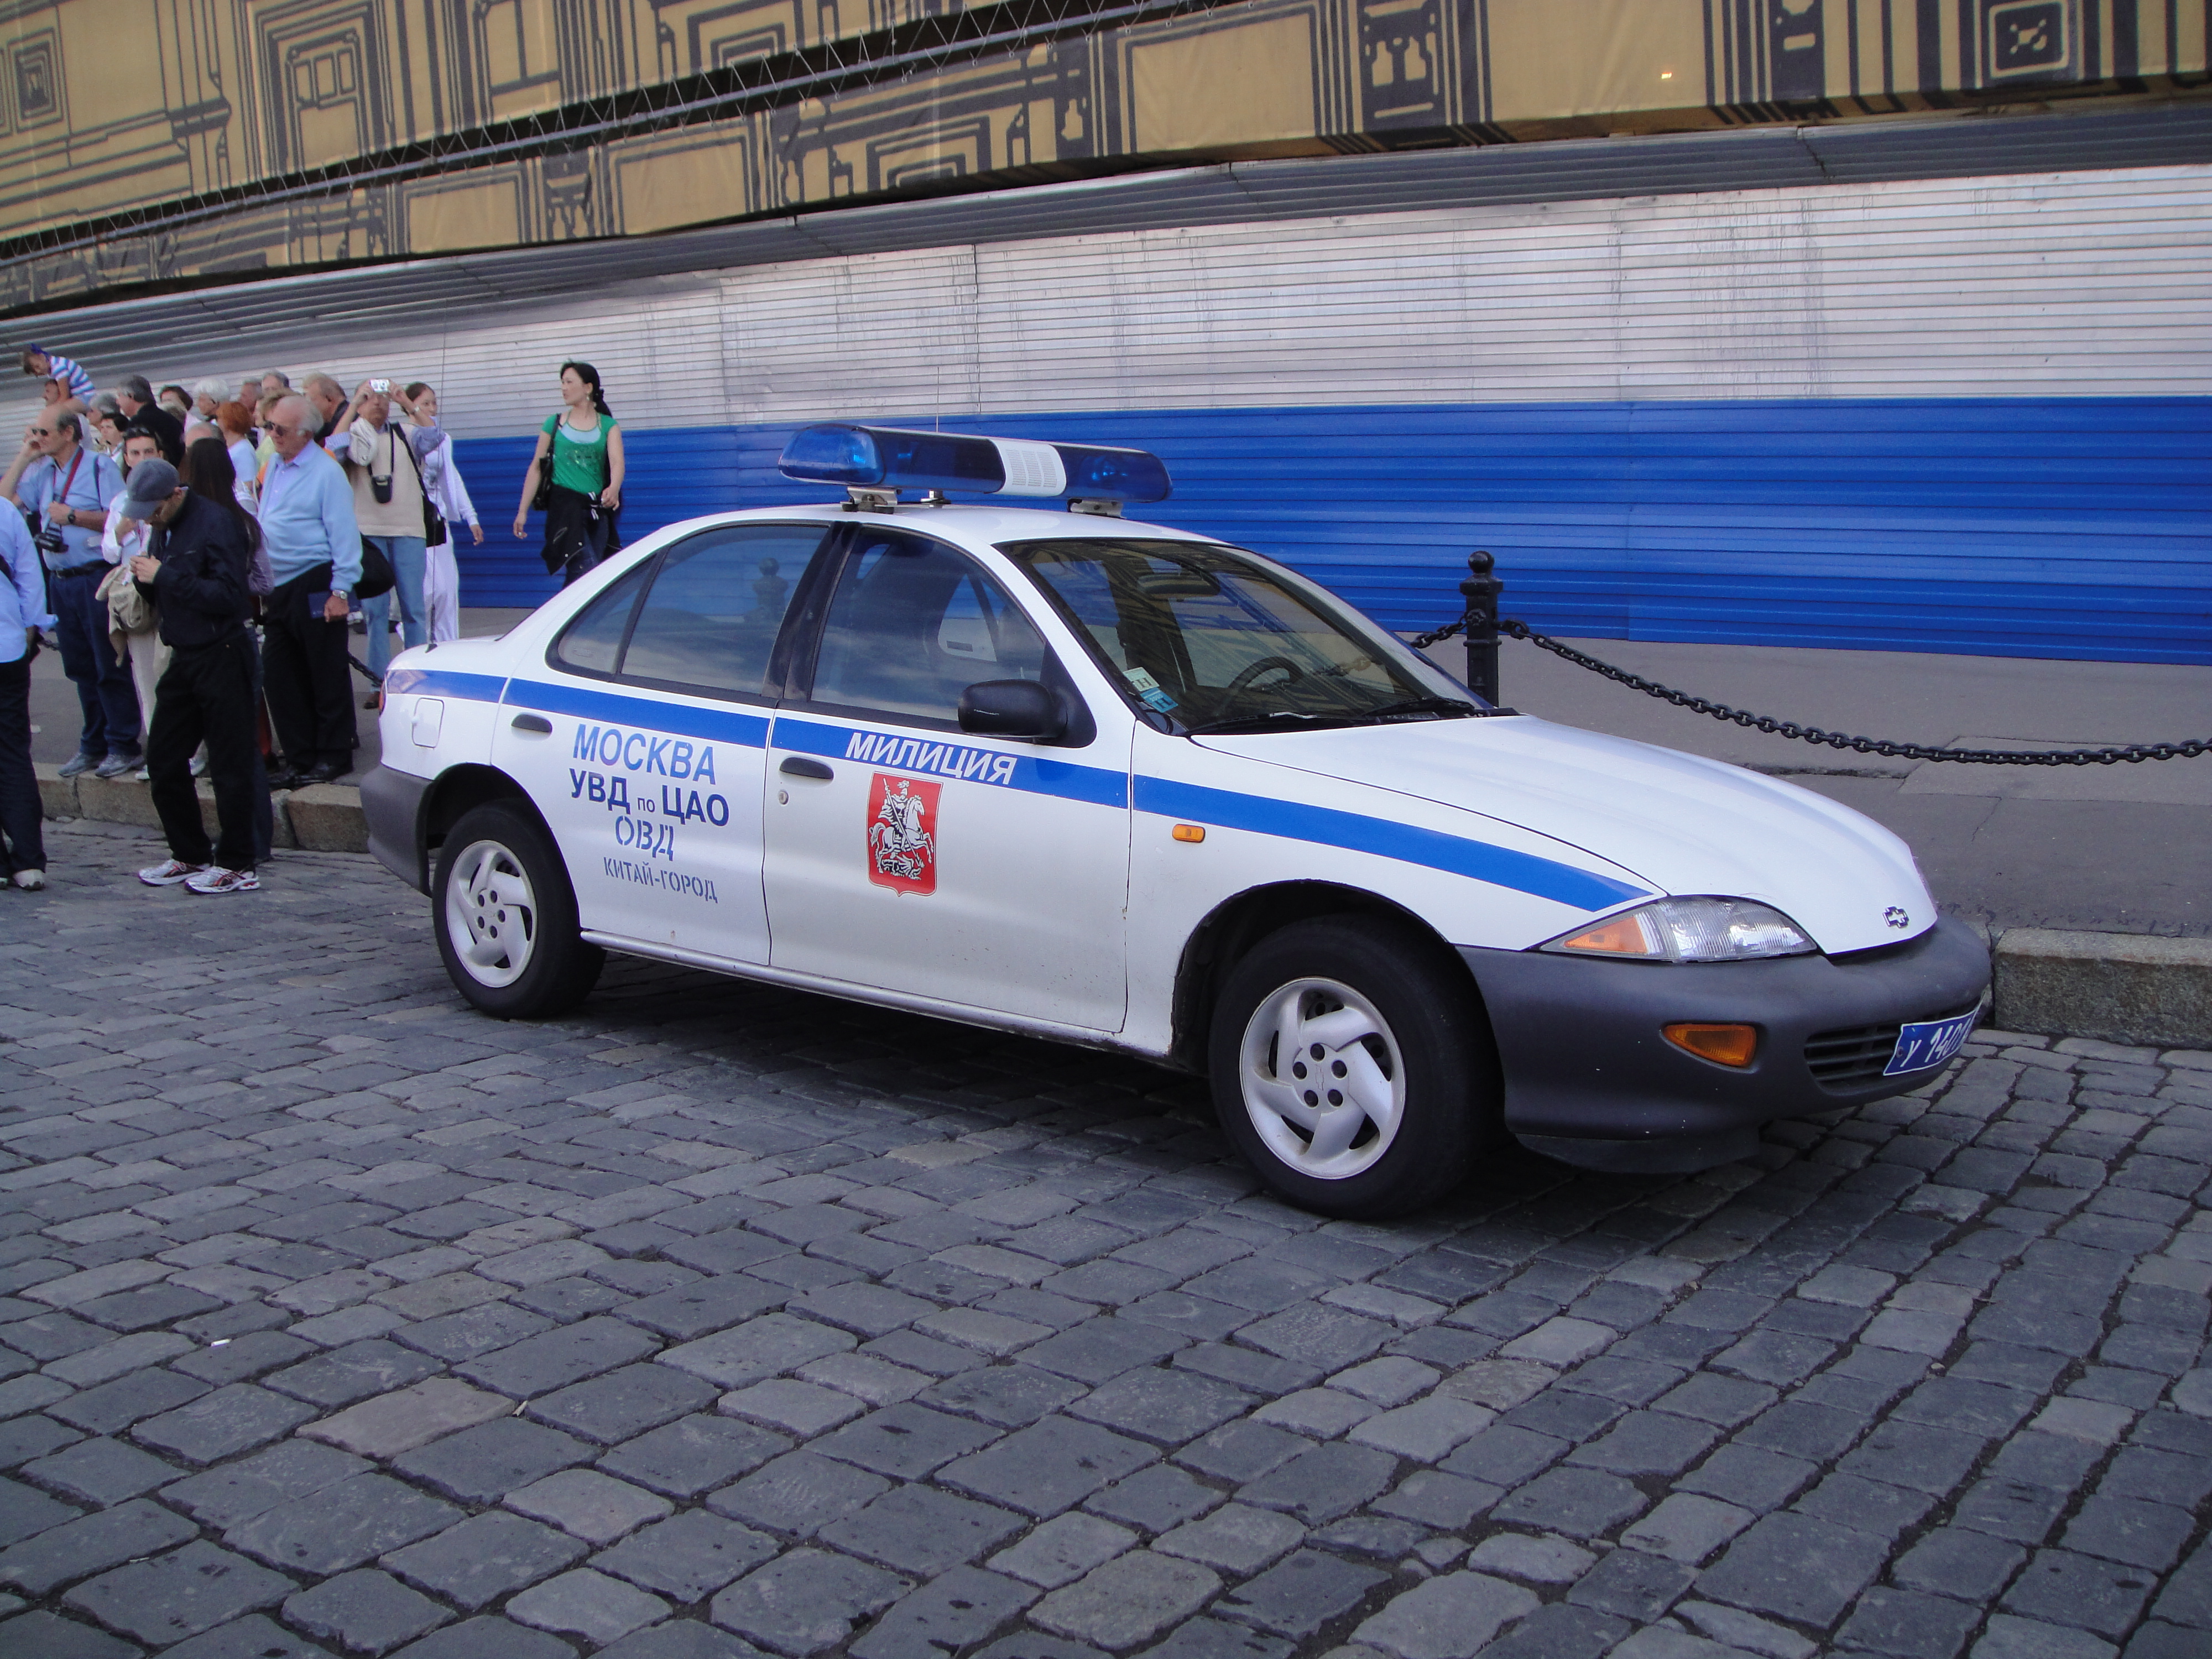 Дпс нахамили усб. Chevrolet Cavalier полиция. Chevrolet Cavalier 1997 милиция. Chevrolet Cavalier полиция Москвы. Шевроле Кавальер милиция.